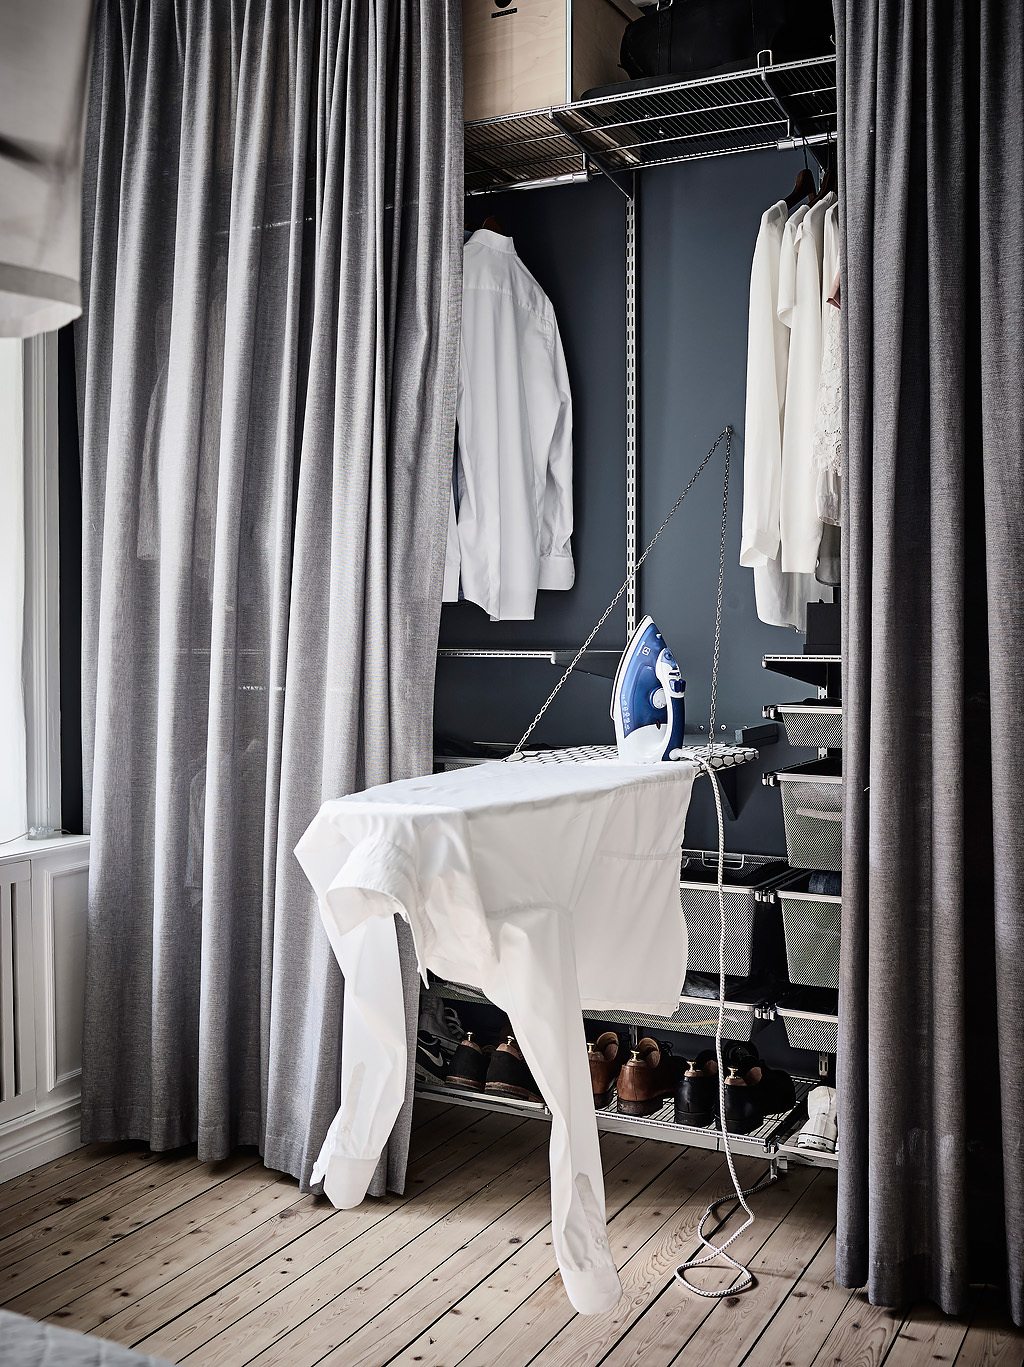 In deze mooie slaapkamer zijn gordijnen opgehangen vóór de open kledingkast